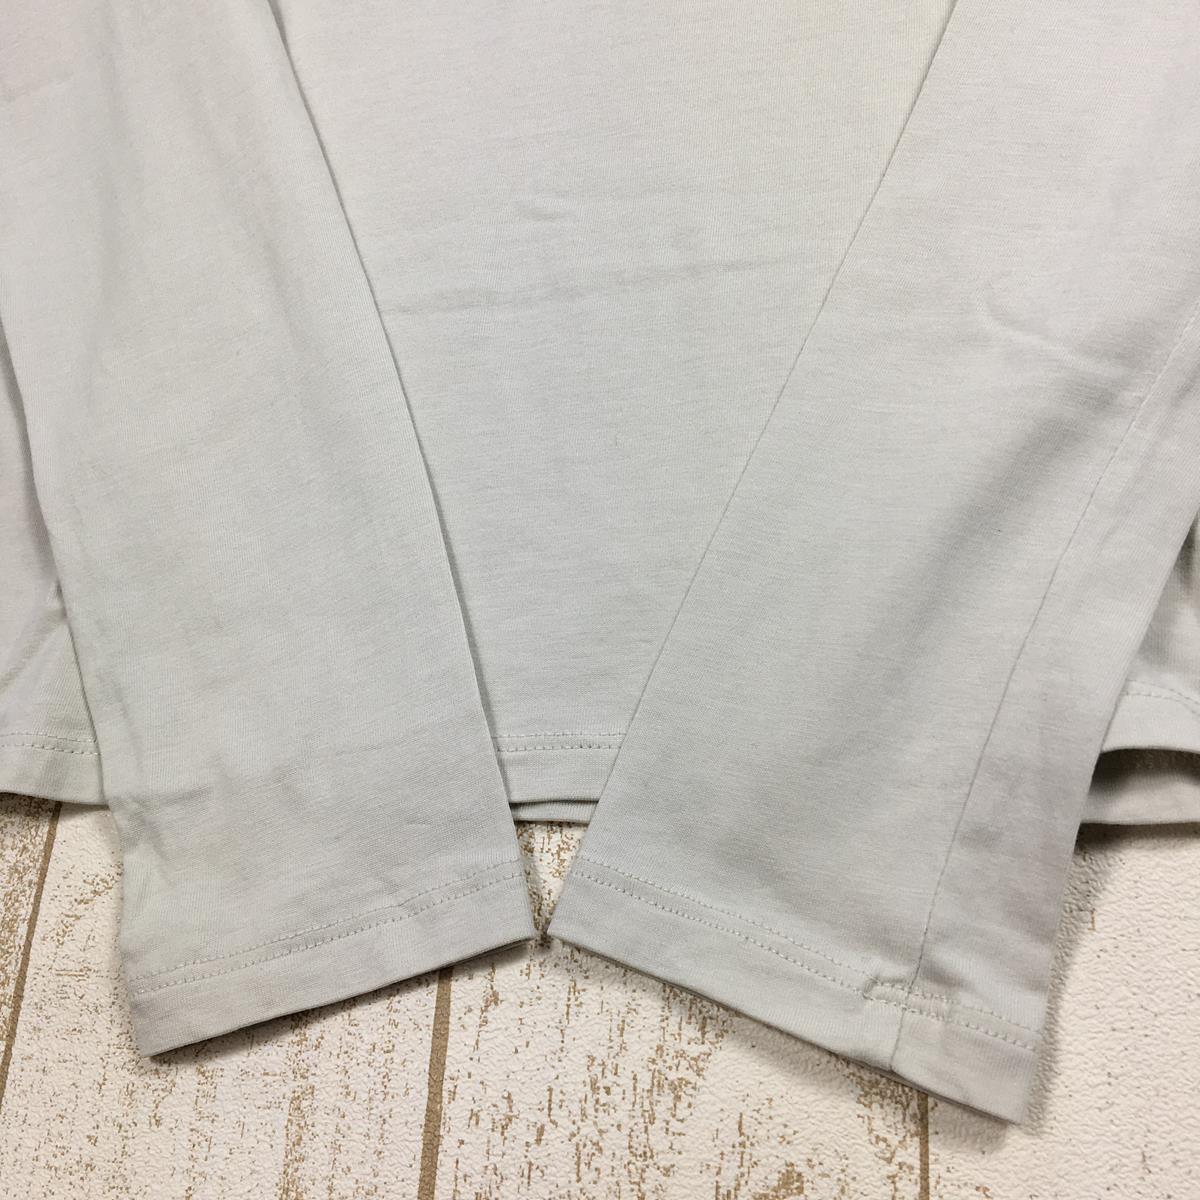 【WOMEN's XS】 パタゴニア ロングスリーブ リジェネラティブ オーガニック サーティファイド コットン ティー Long-Sleeved Regenerative Organic Certified Cotton Tee Tシャツ ロンT PATAGONIA 42175 DYWH ベージュ系